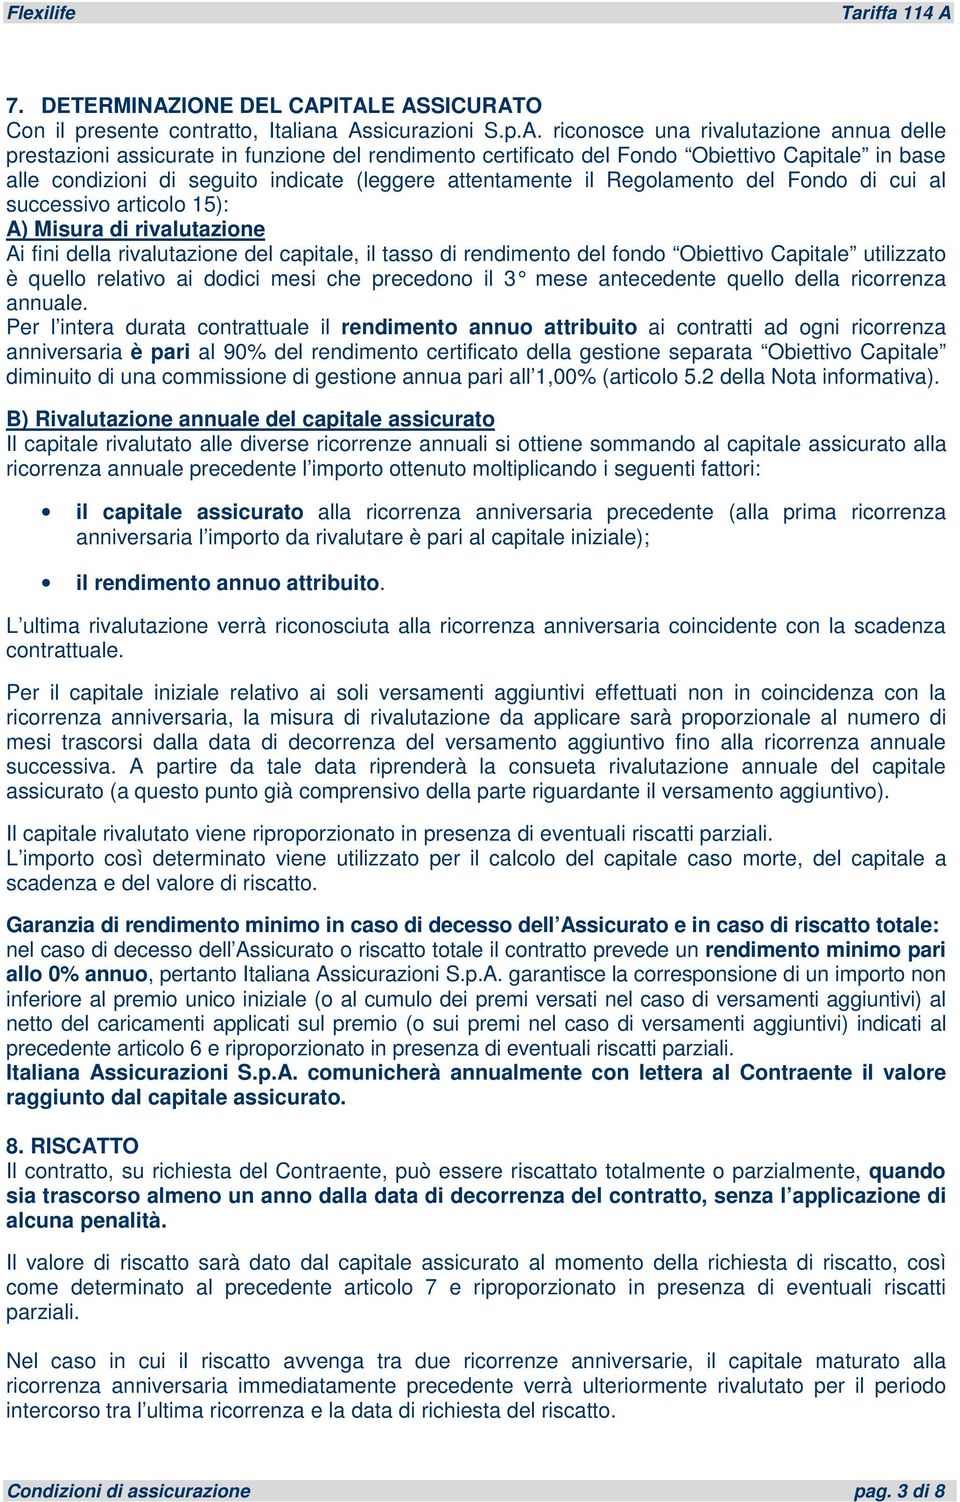 ITALE ASSICURATO Con il presente contratto, Italiana Assicurazioni S.p.A. riconosce una rivalutazione annua delle prestazioni assicurate in funzione del rendimento certificato del Fondo Obiettivo